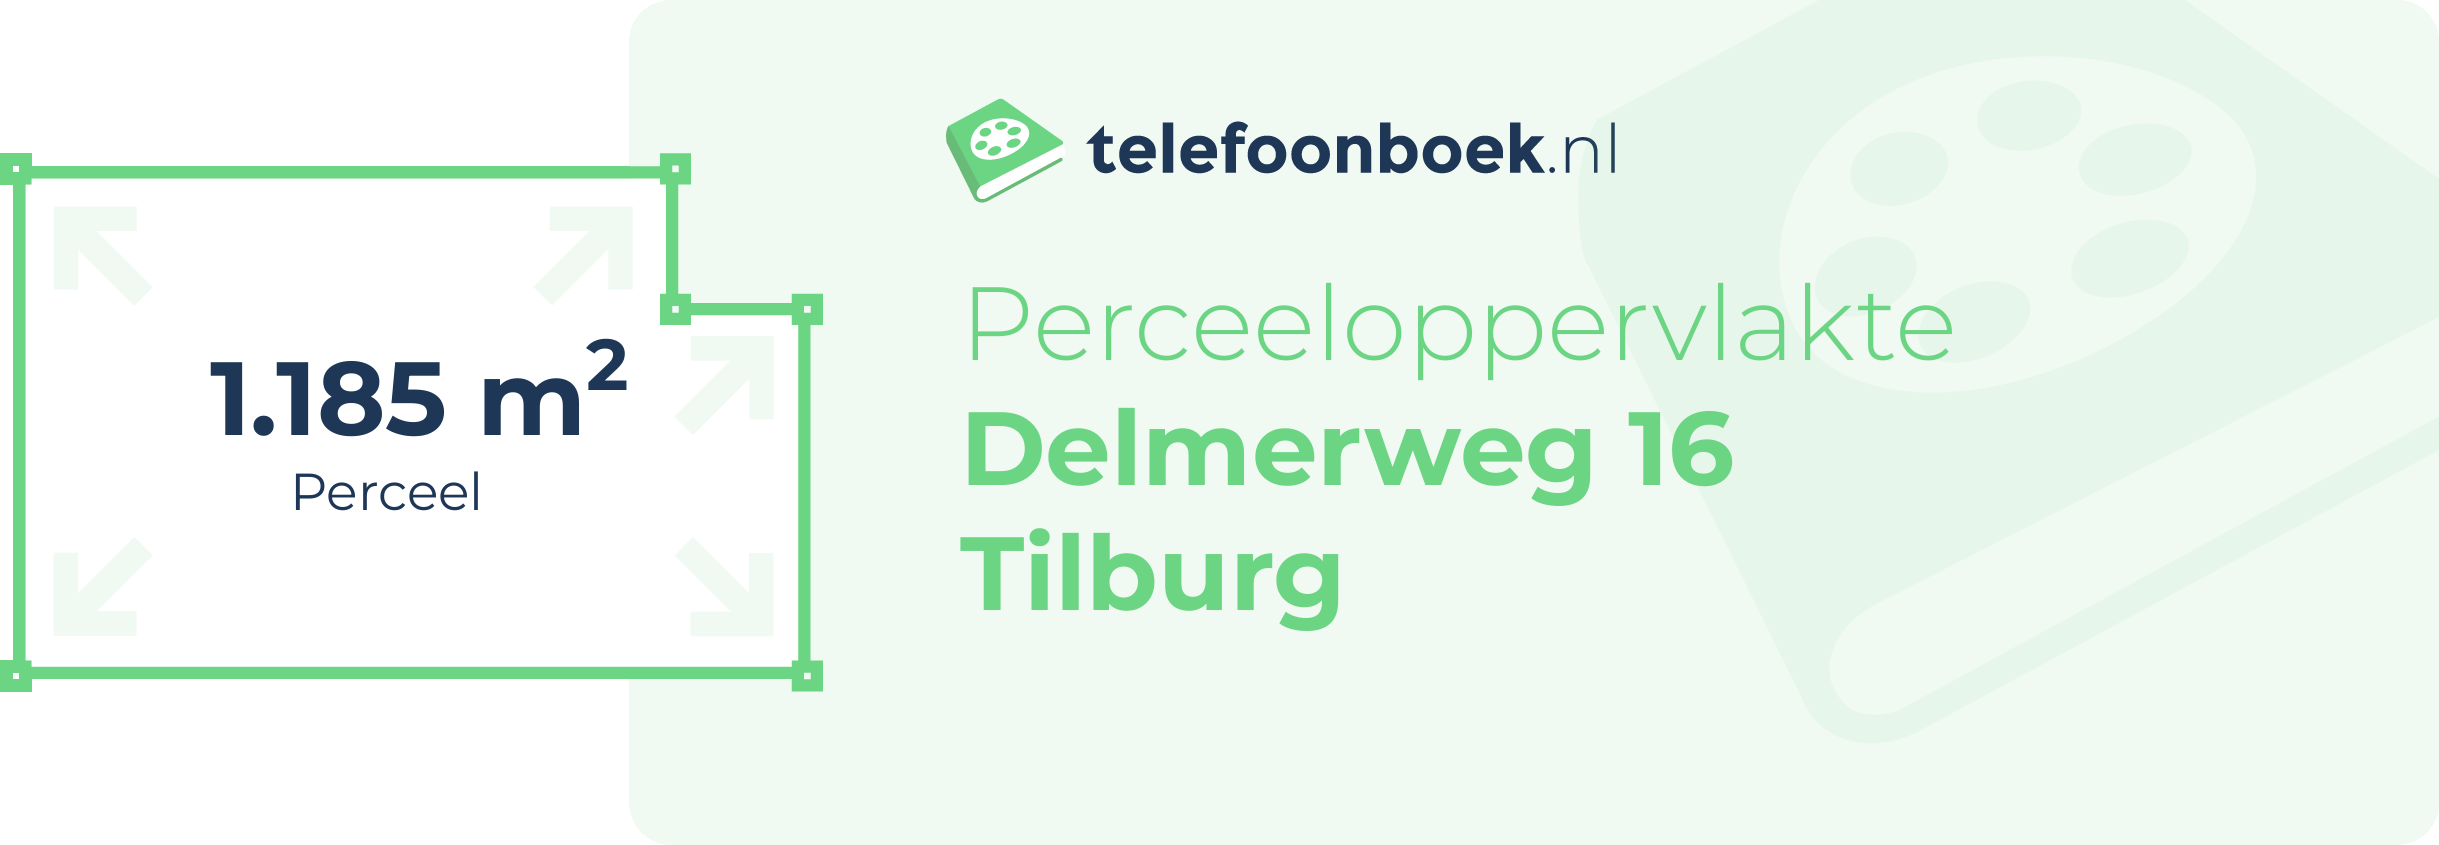 Perceeloppervlakte Delmerweg 16 Tilburg